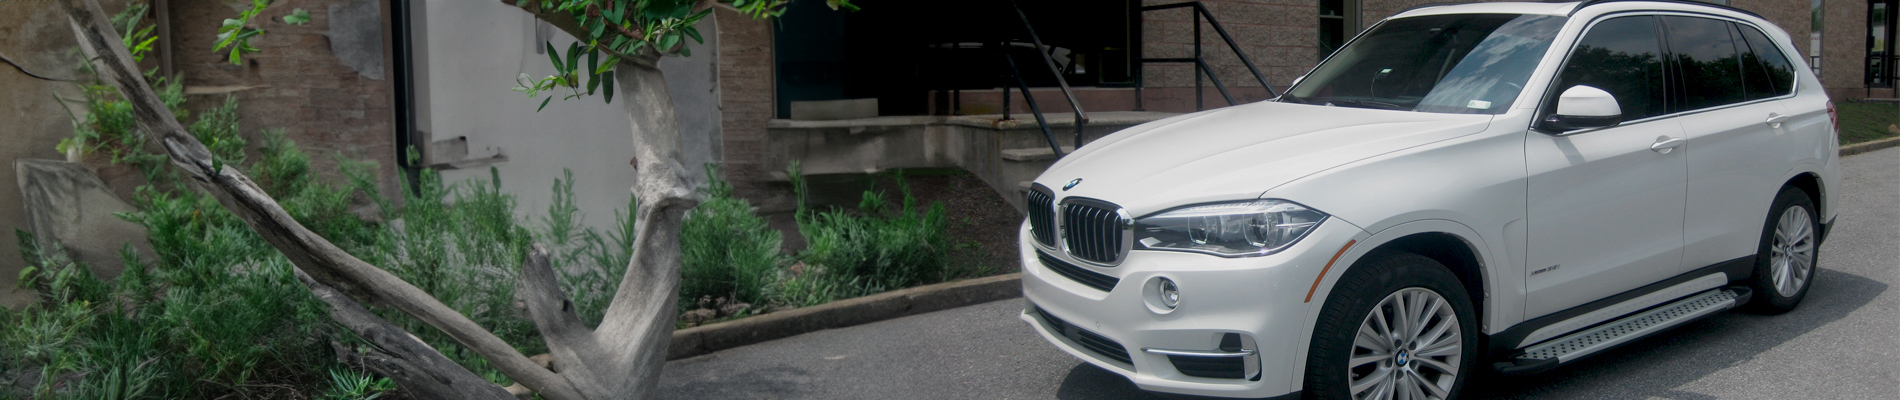 BMW X5 Accessories, Aftermarket Parts, Mods & Upgrades - AutoAccessoriesGarage.com